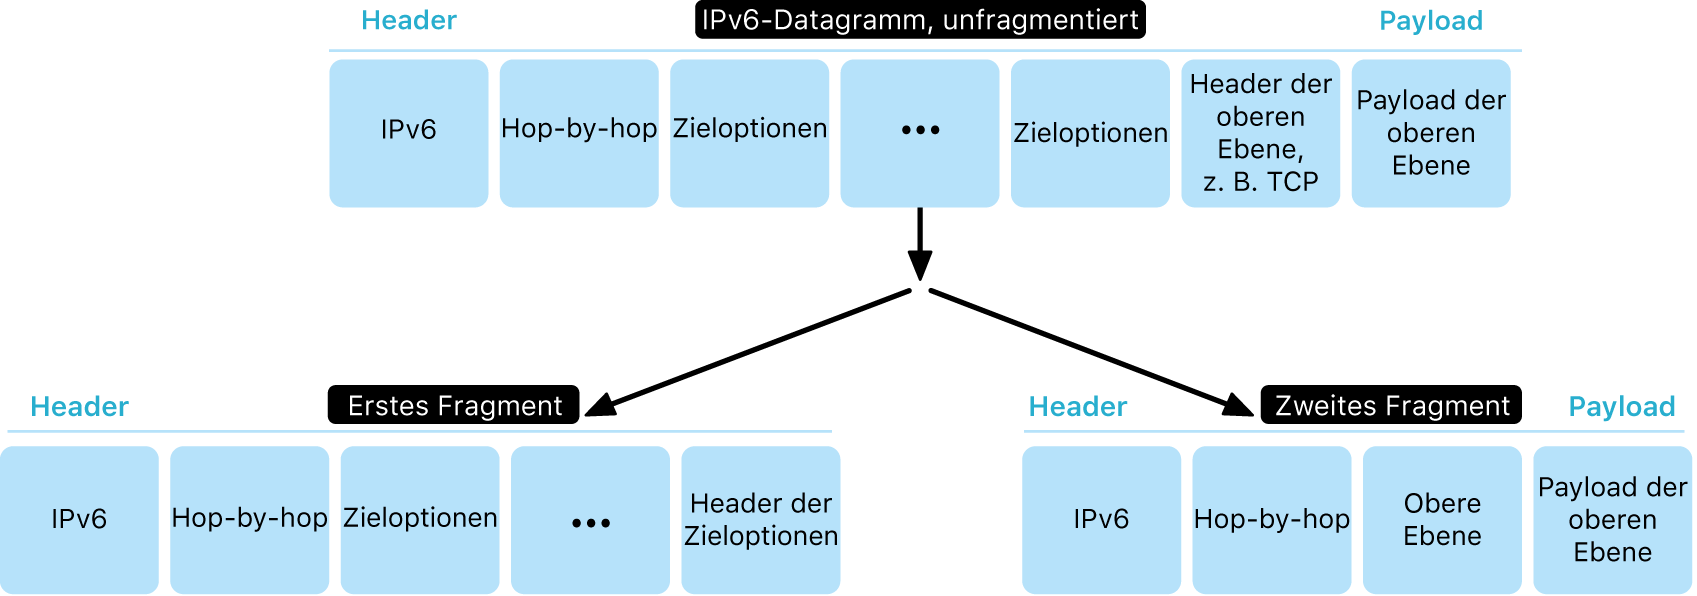 Das Diagramm zeigt ein IPv6-Datagramm mit zwei Ebenen: unfragmentiert und darunter fragmentiert